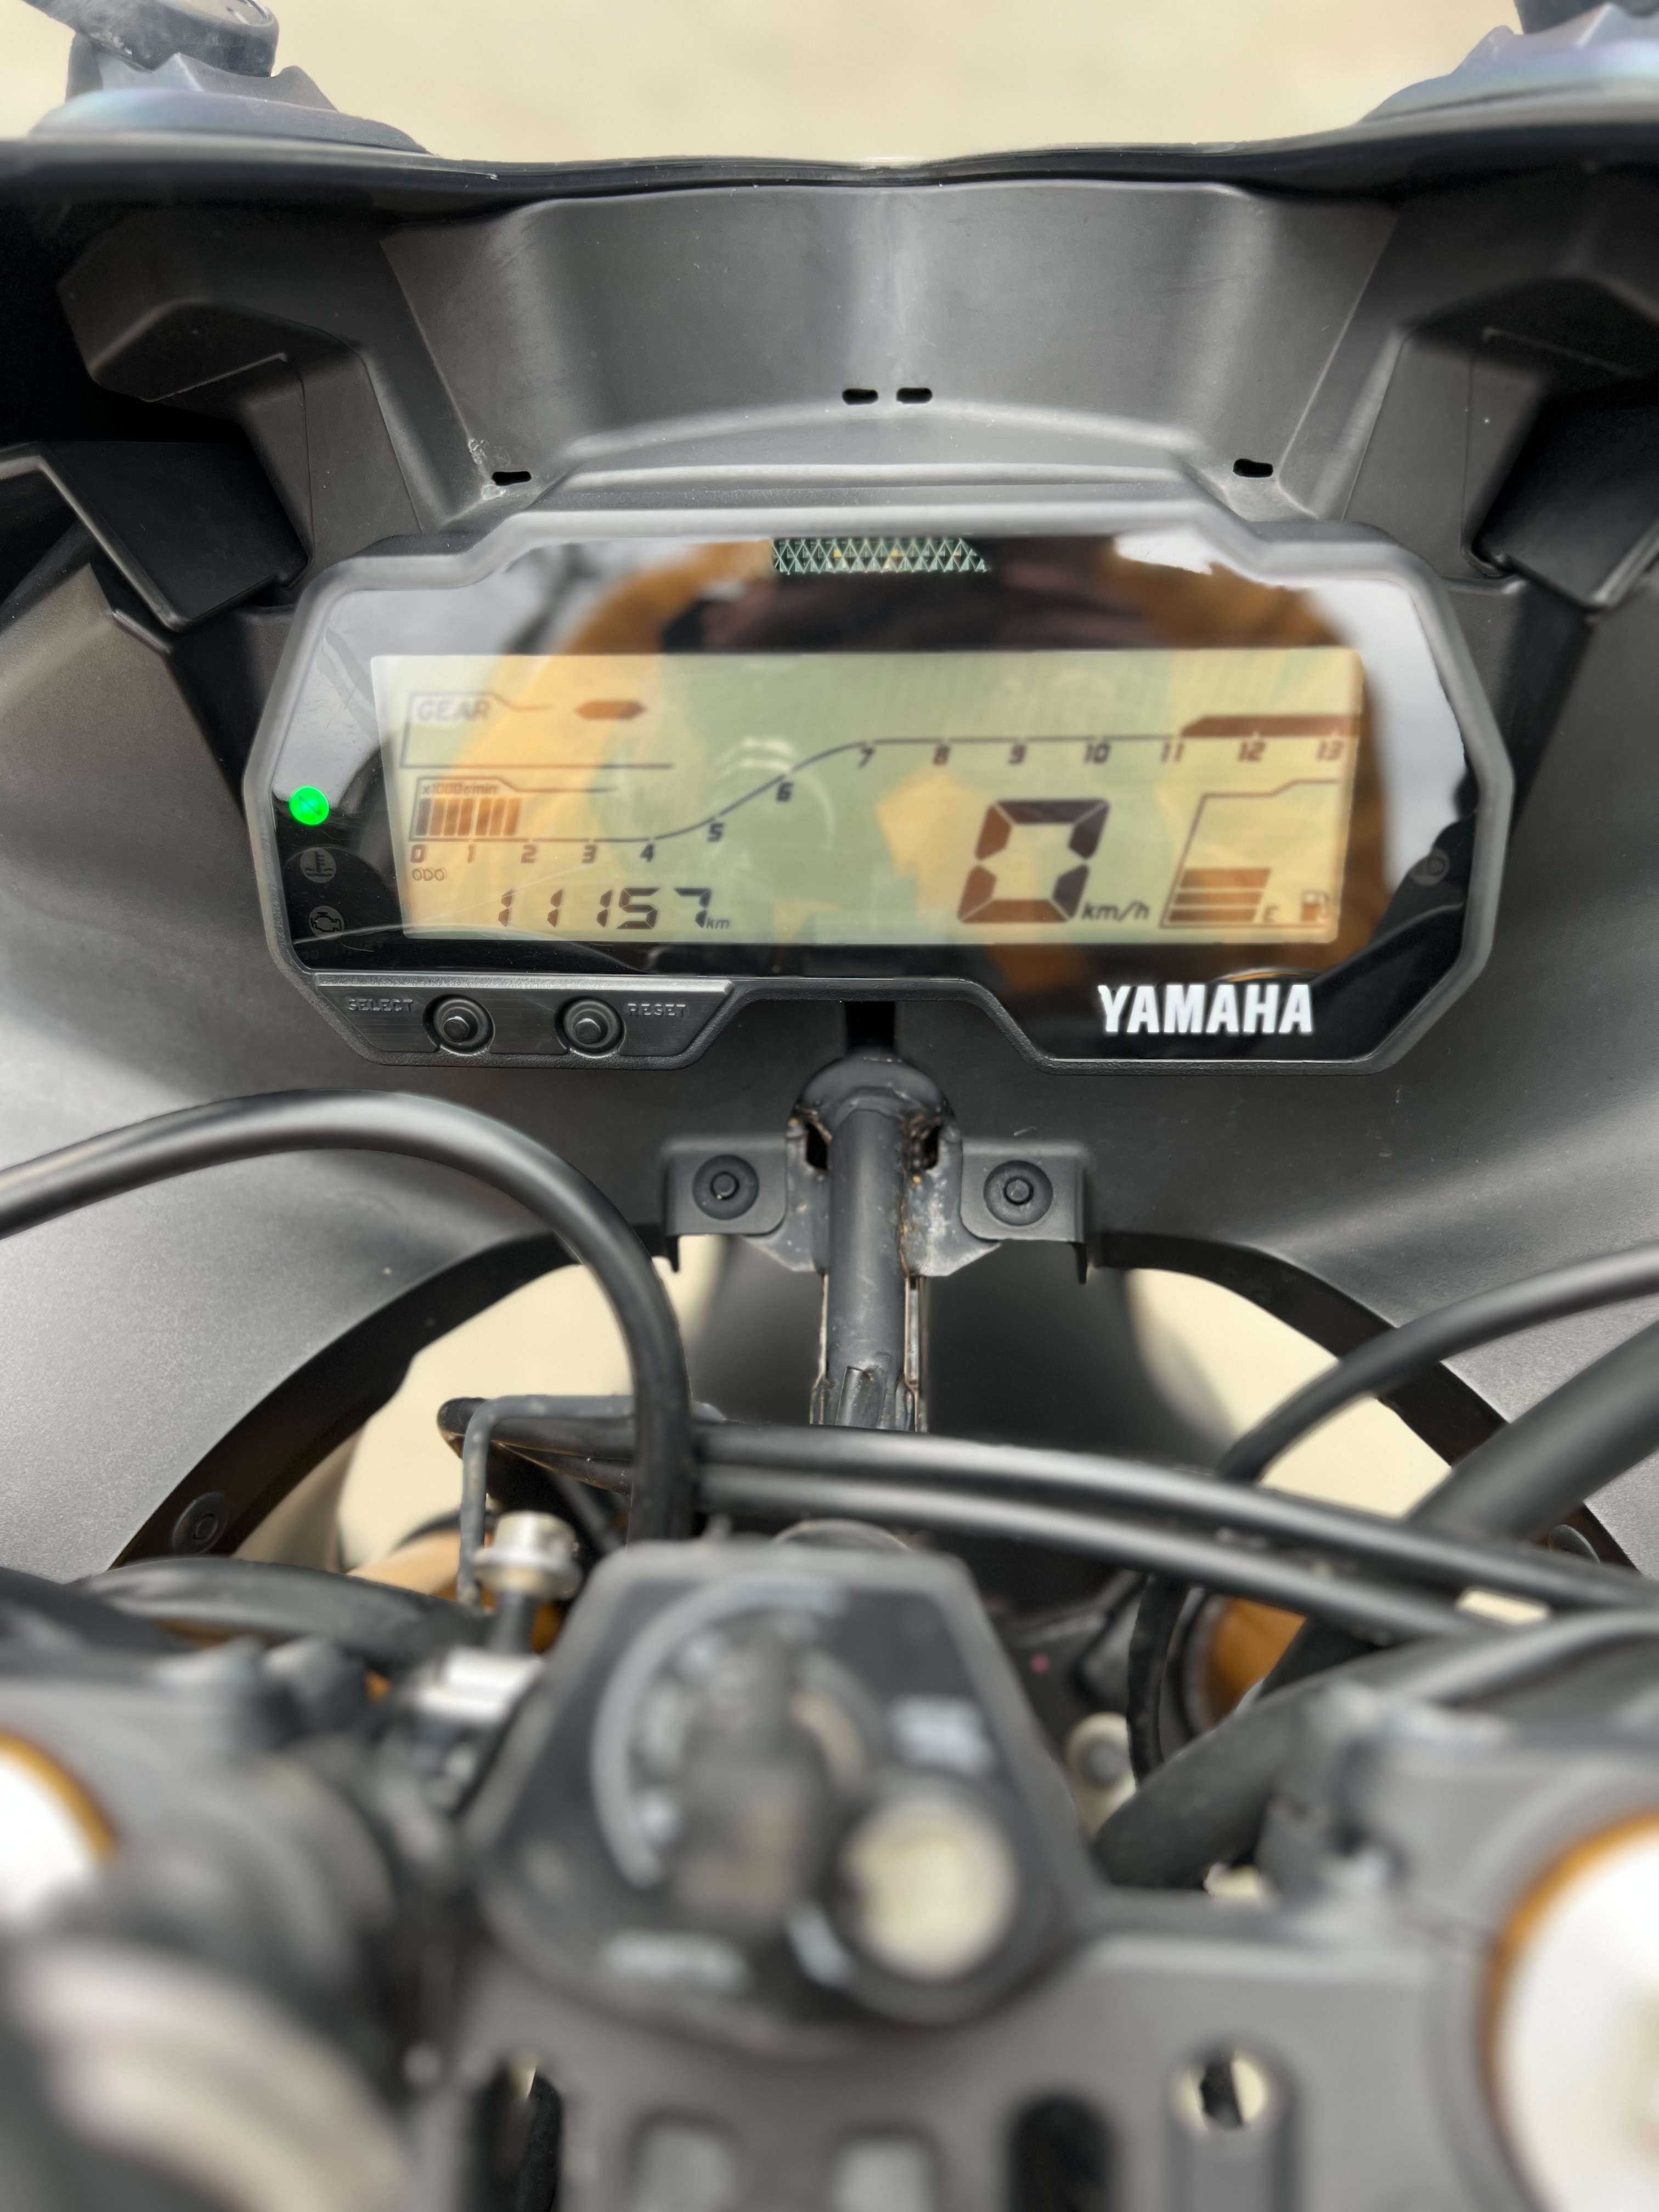 YAMAHA YZF-R15 - 中古/二手車出售中 2021年 R15V3 黑色系 短牌架 腳踏後移 | 阿宏大型重機買賣